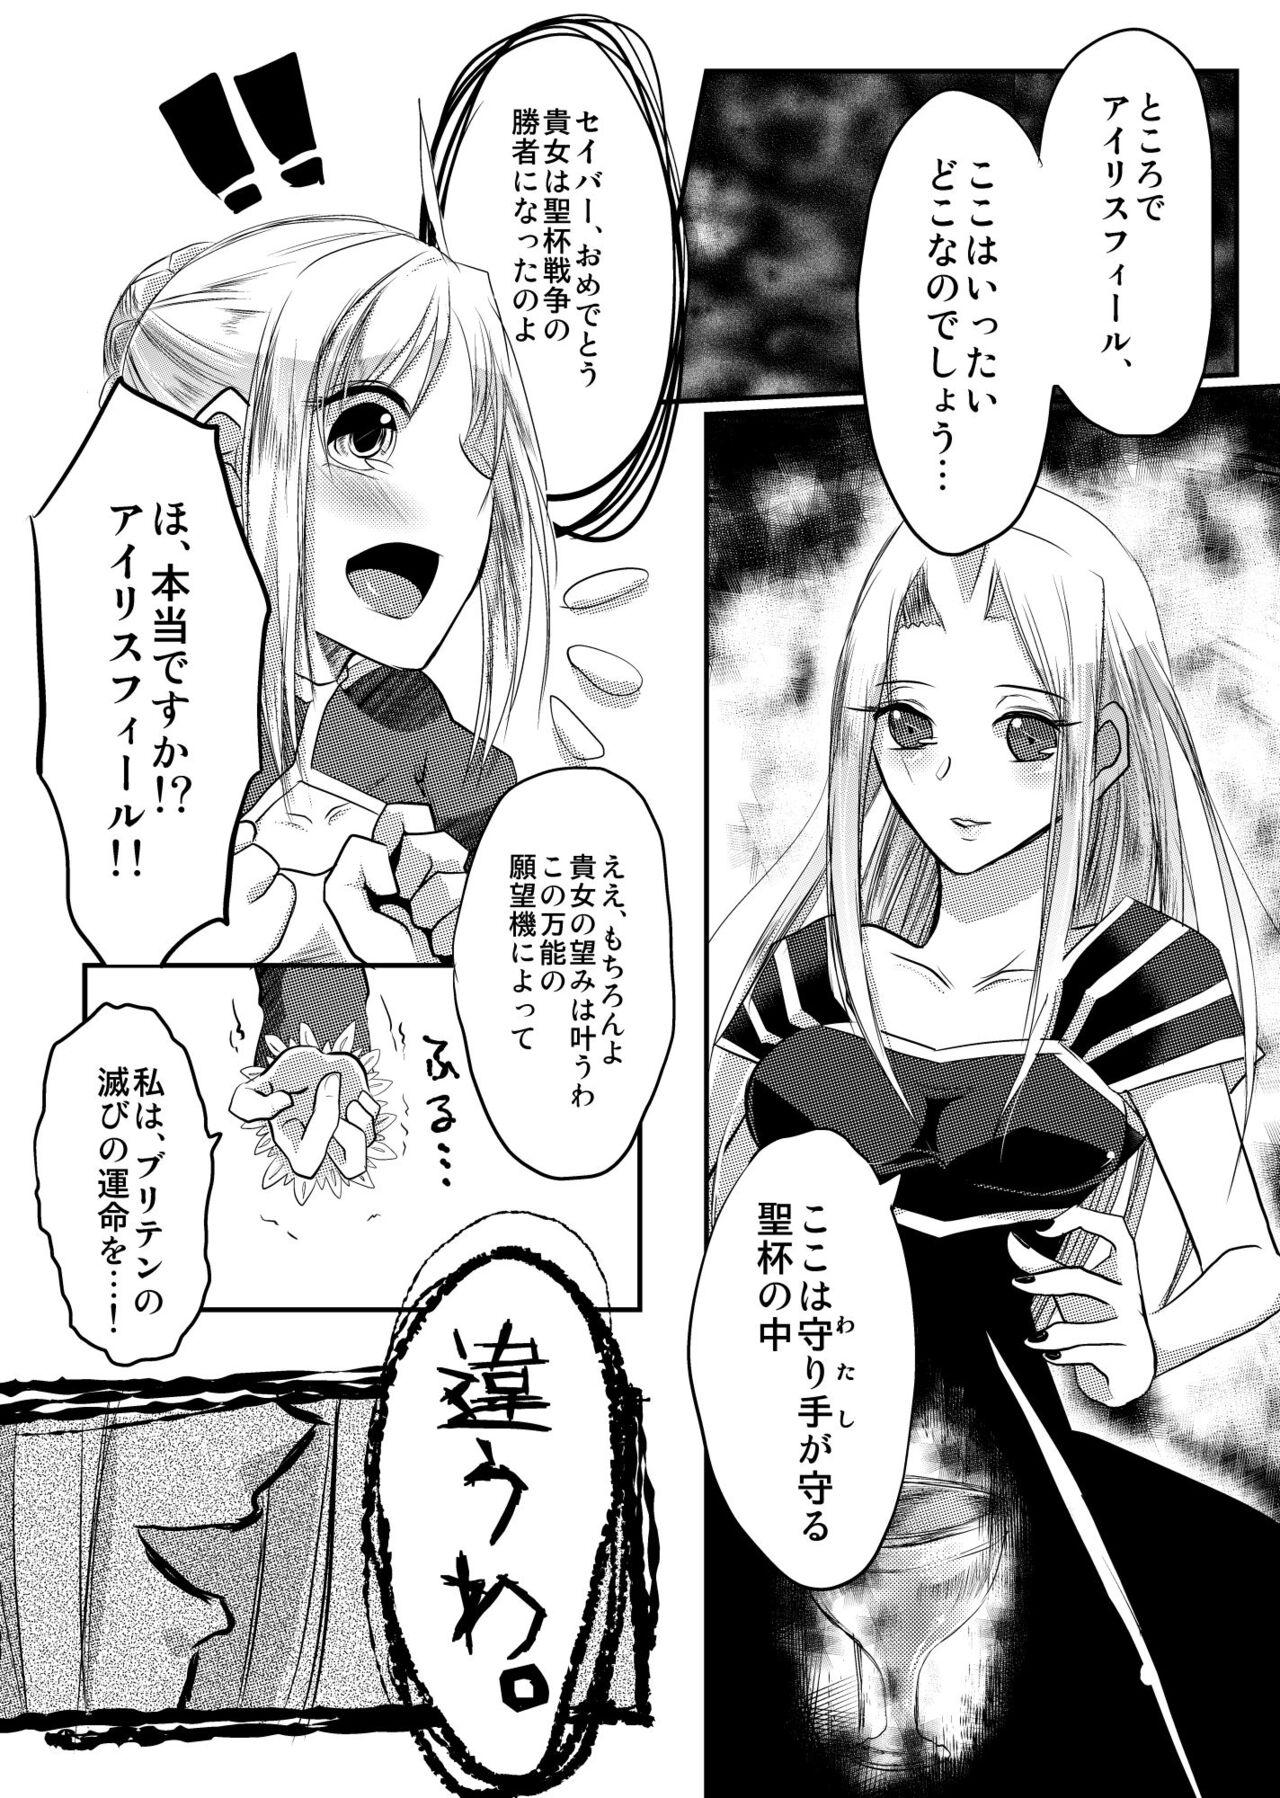 Newbie Daraku no Hana - Fate zero First Time - Page 7